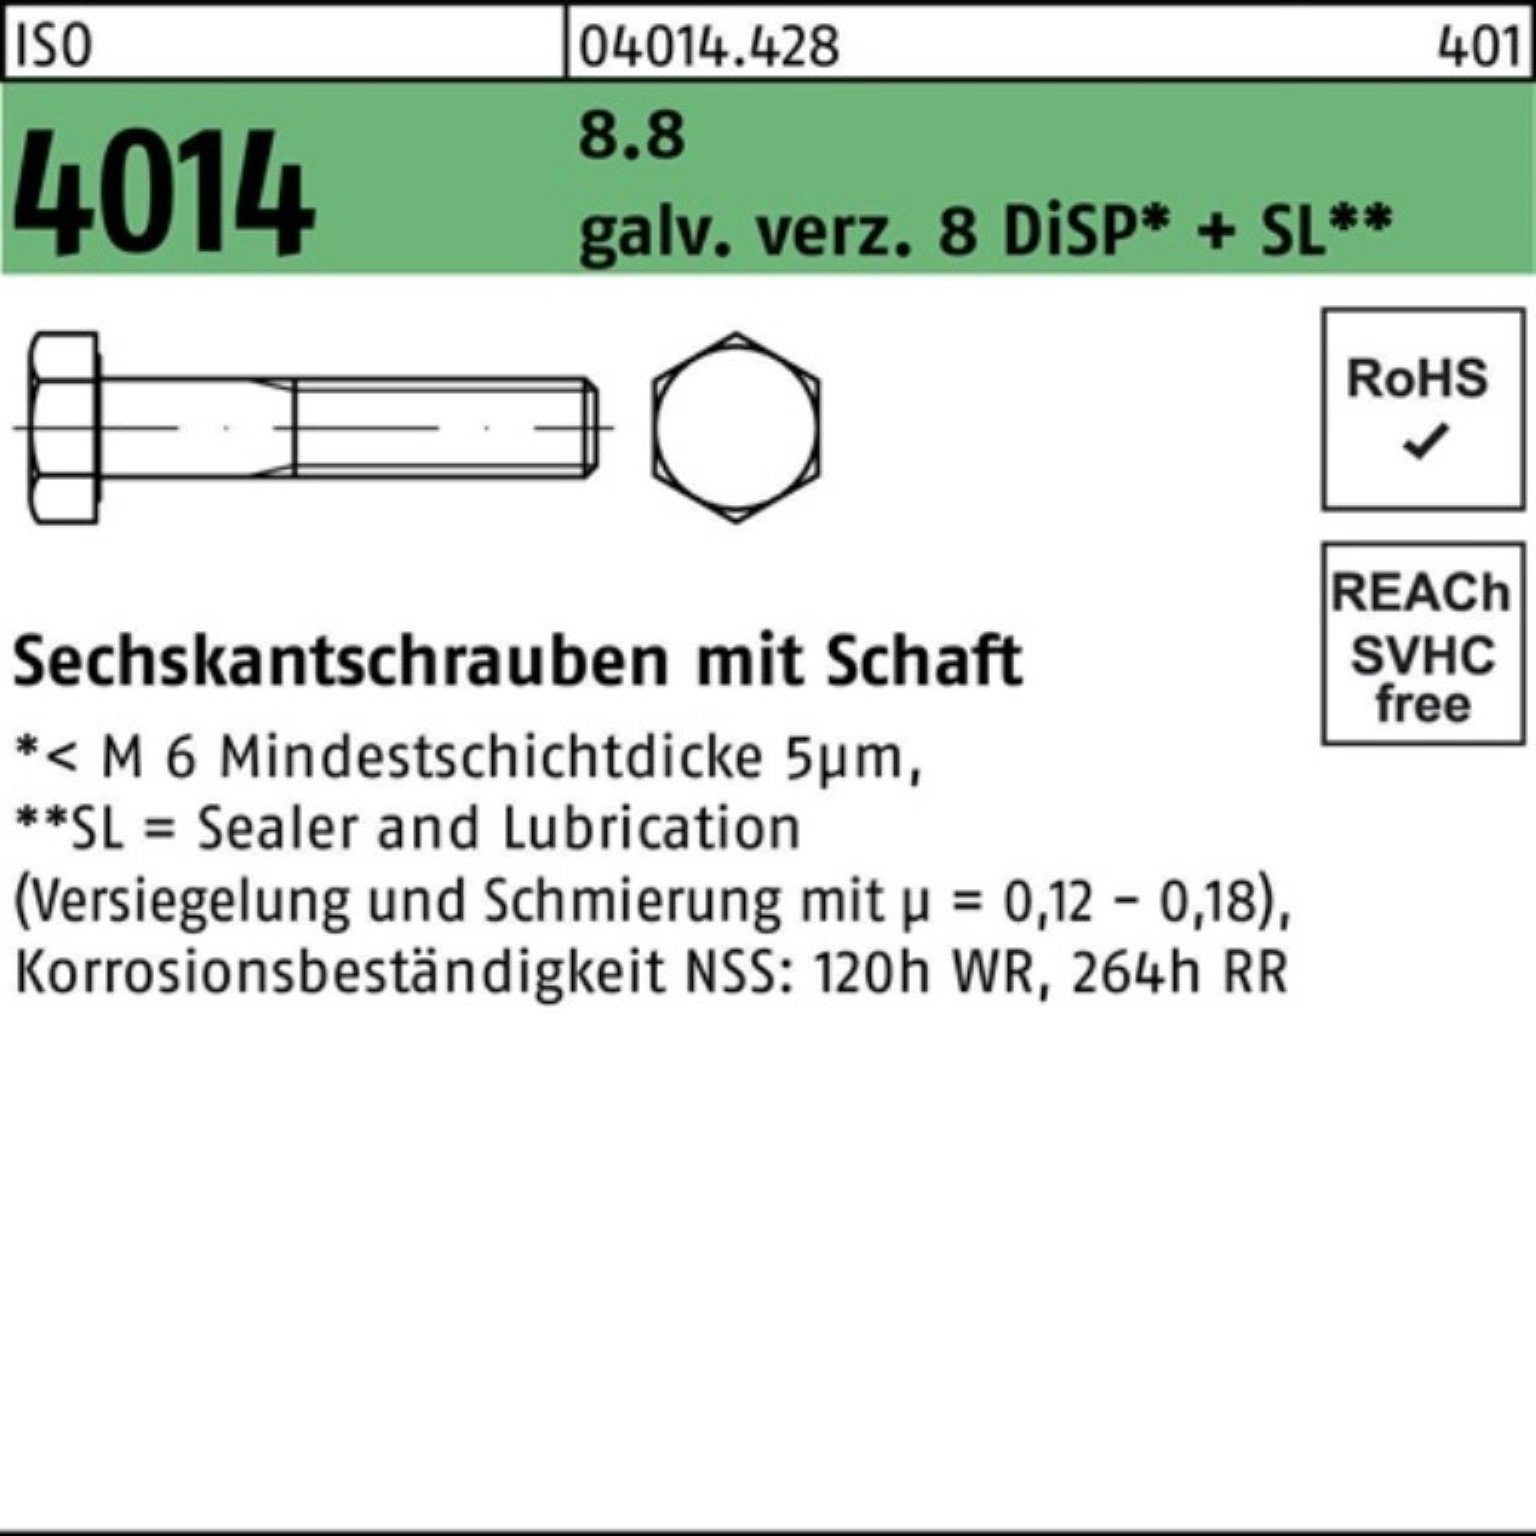 Bufab Sechskantschraube 100er Pack Sechskantschraube ISO 4014 Schaft M12x160 8.8 galv.verz. 8